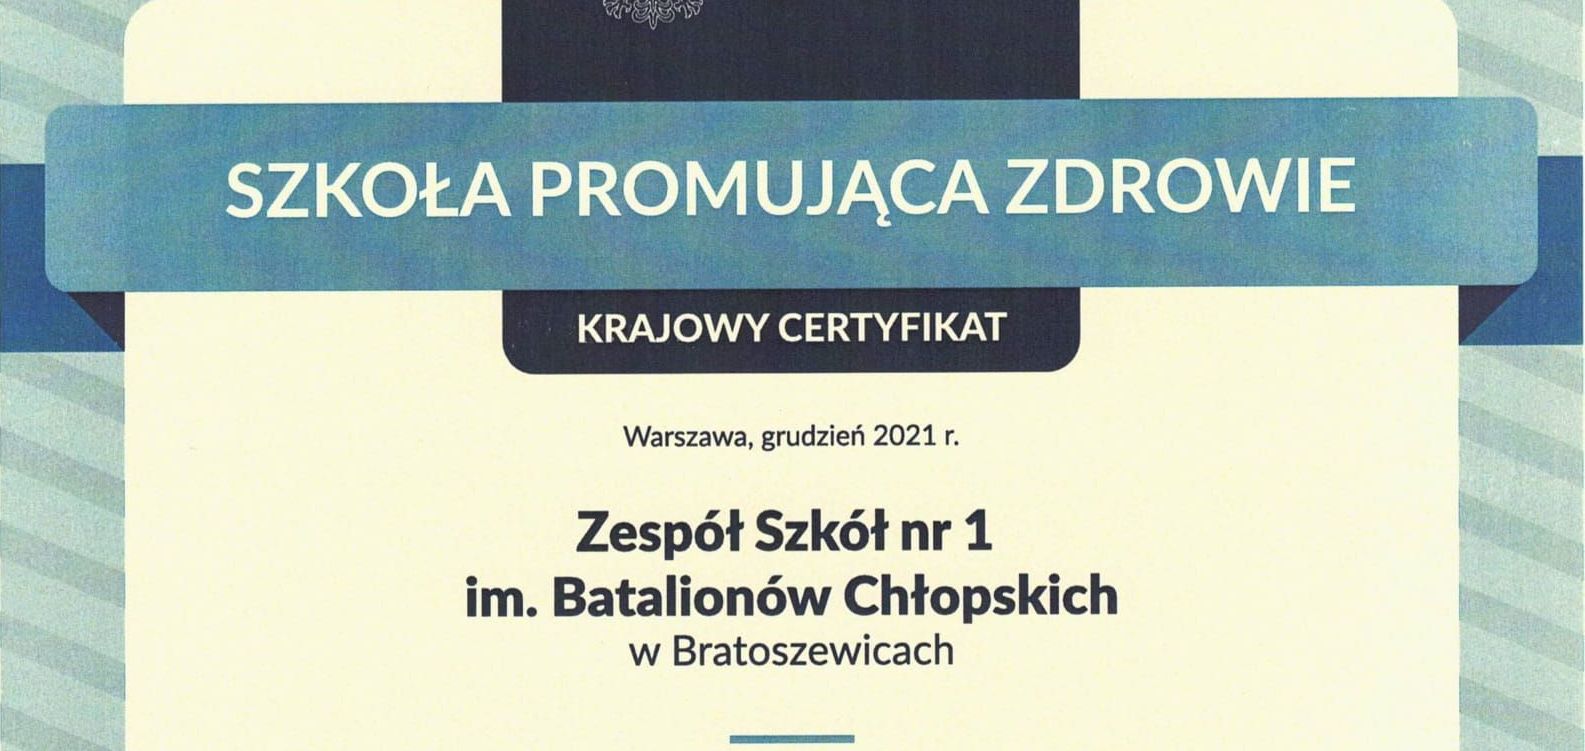 Krajowy Certyfikat „Szkoła Promująca Zdrowie” dla ZS Nr 1 w Bratoszewicach